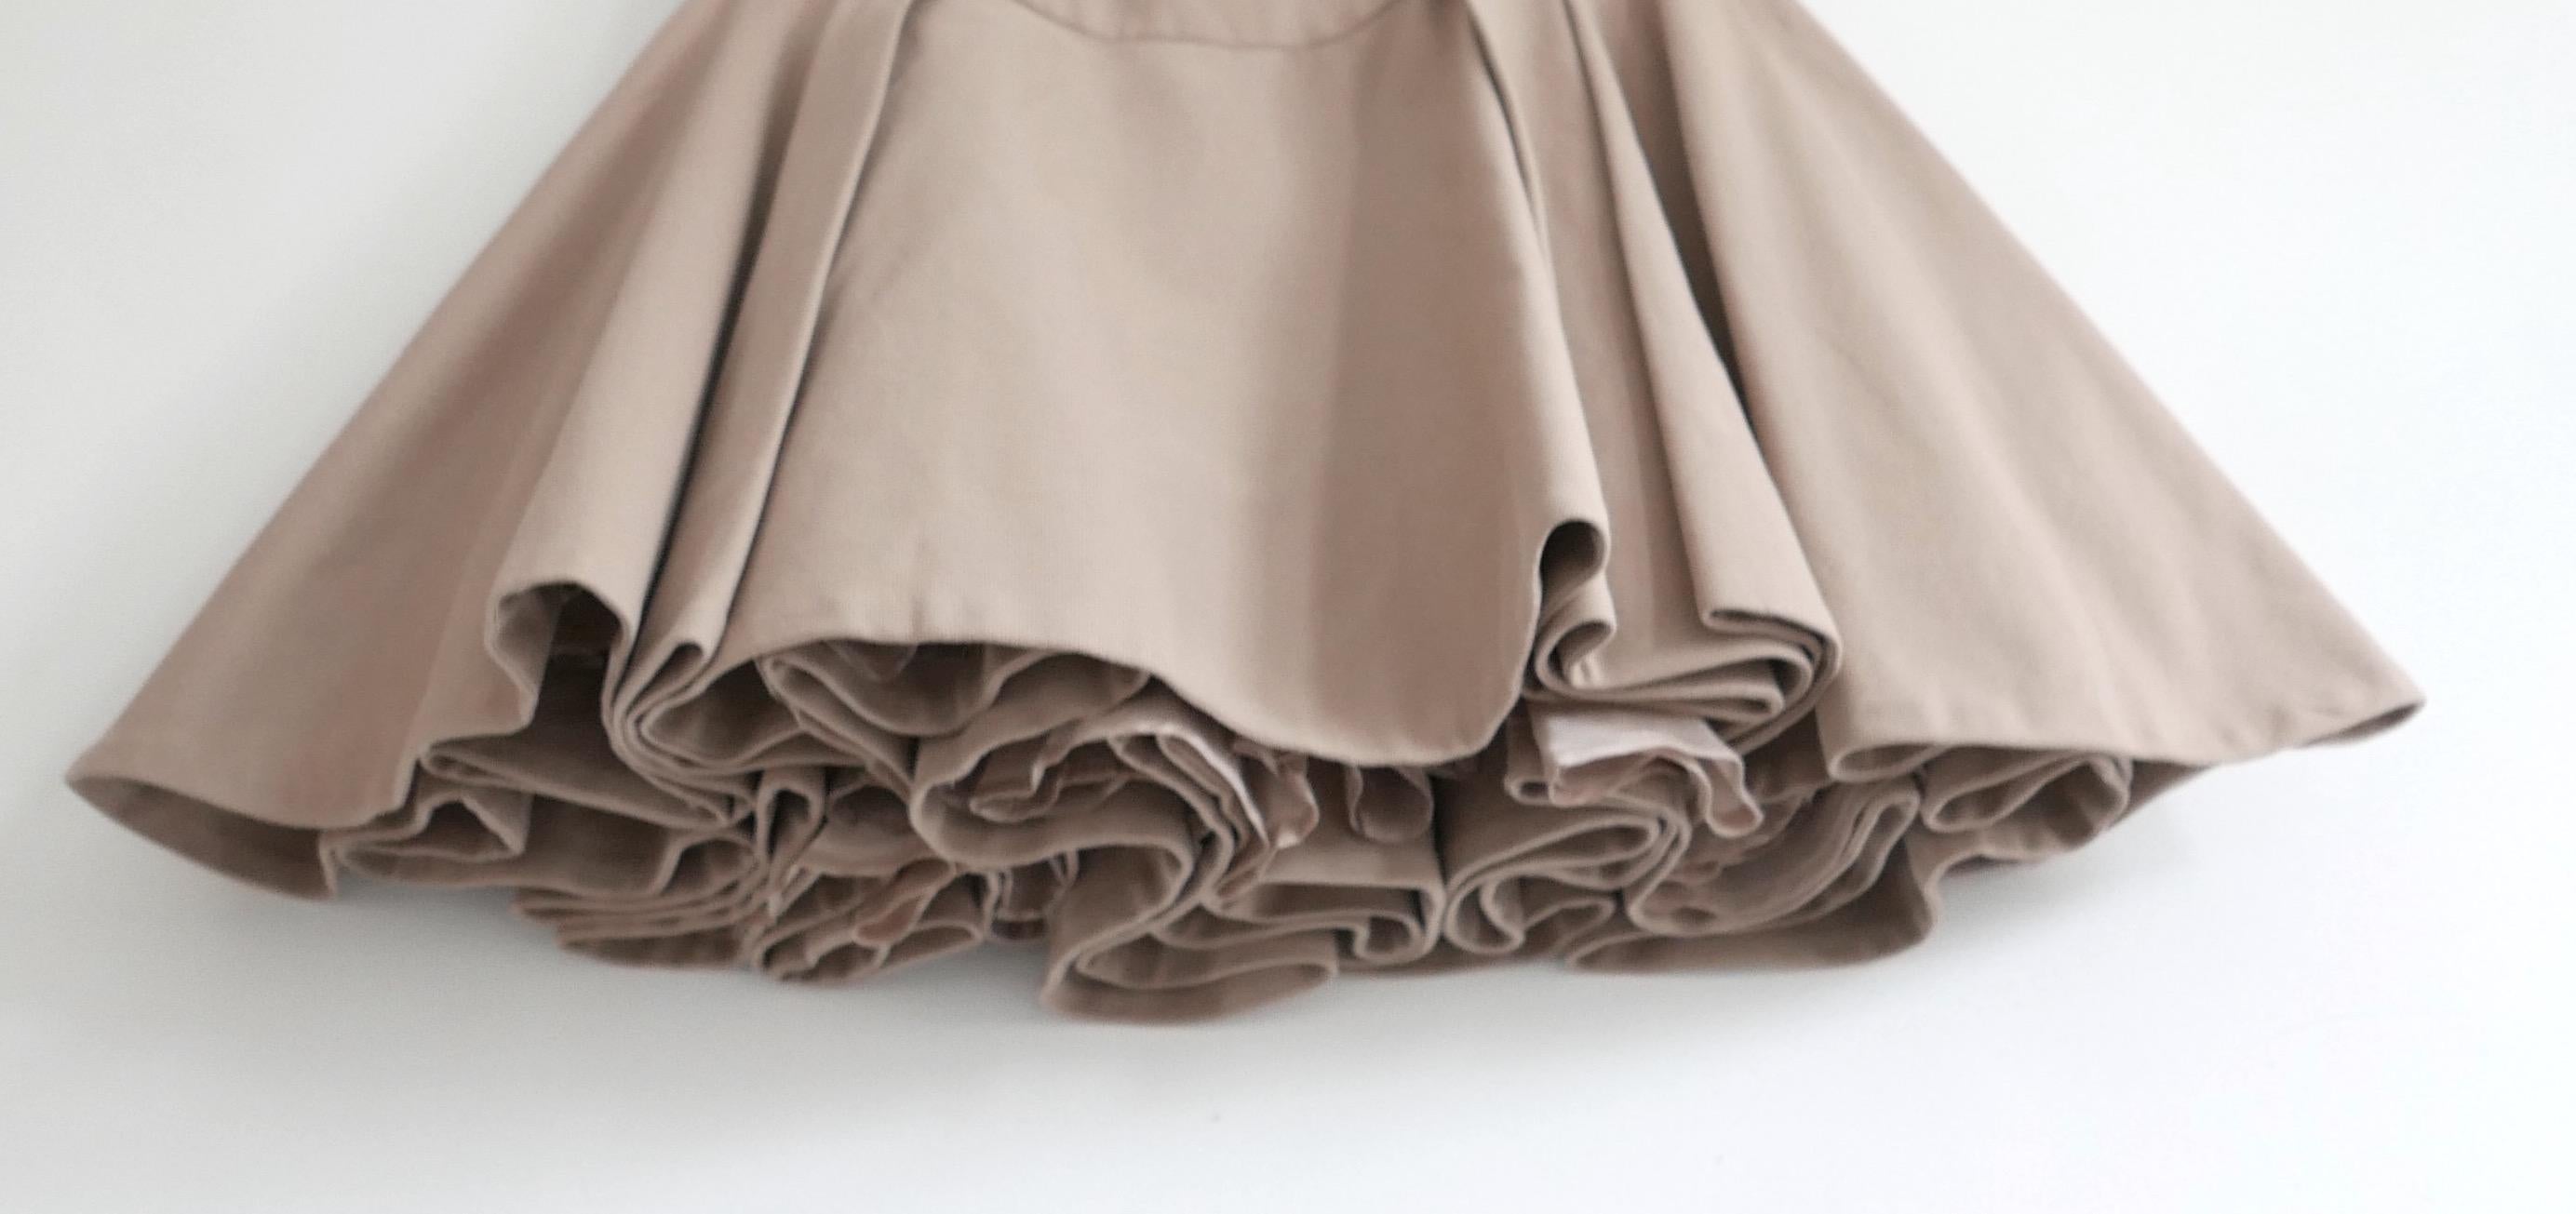 De superbes archives d'Alexander McQueen  jupe super évasée de la collection Pre-Fall 2011. Porté une fois. Confectionnée en sergé lourd de coton et d'élasthanne de couleur camel, elle est dotée d'une jupe super ample à plis multiples superbement